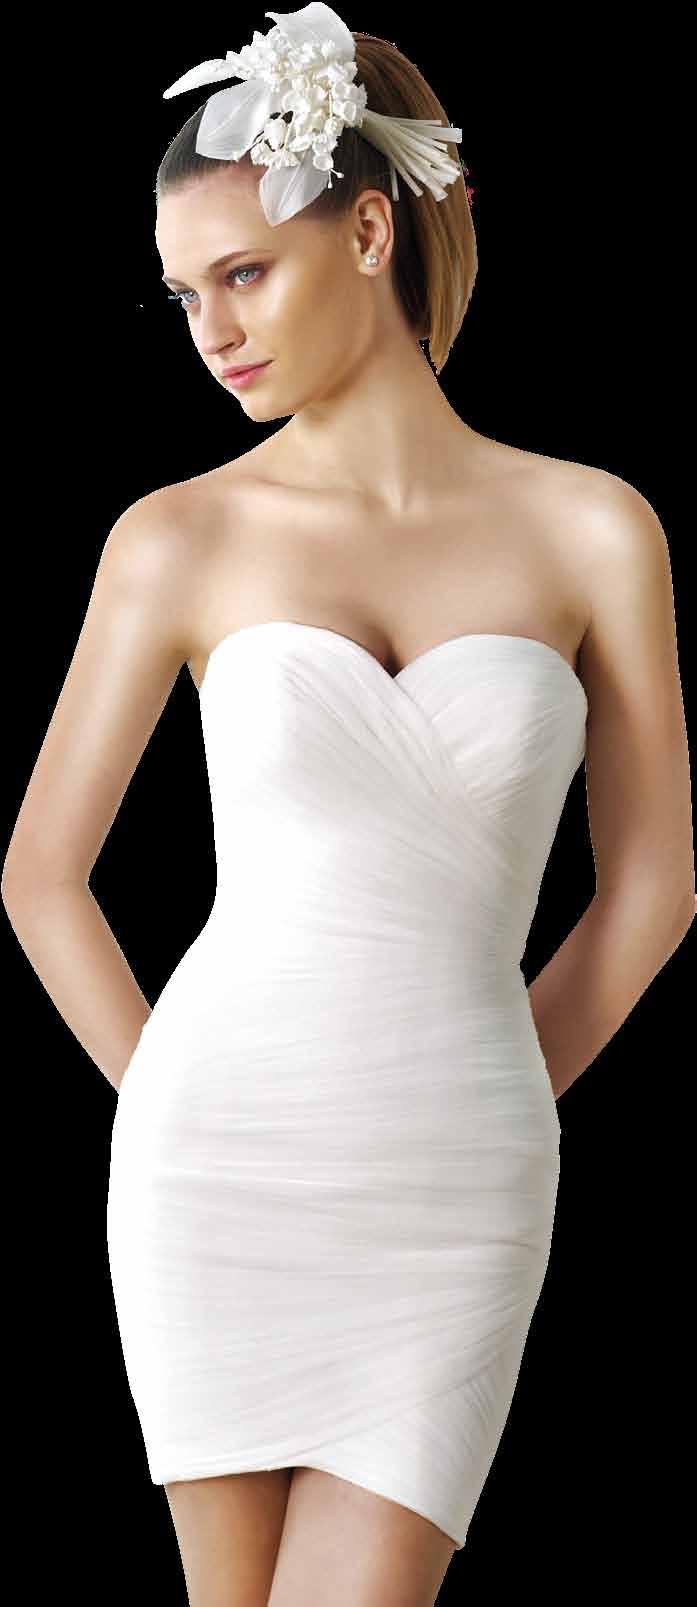 Je kunt gewoon een bruidsjurk komen uitzoeken. Samen bepalen we je maat. We adviseren vaak de jurk één maatje groter te nemen, omdat innemen nou eenmaal makkelijker is dan uitleggen.